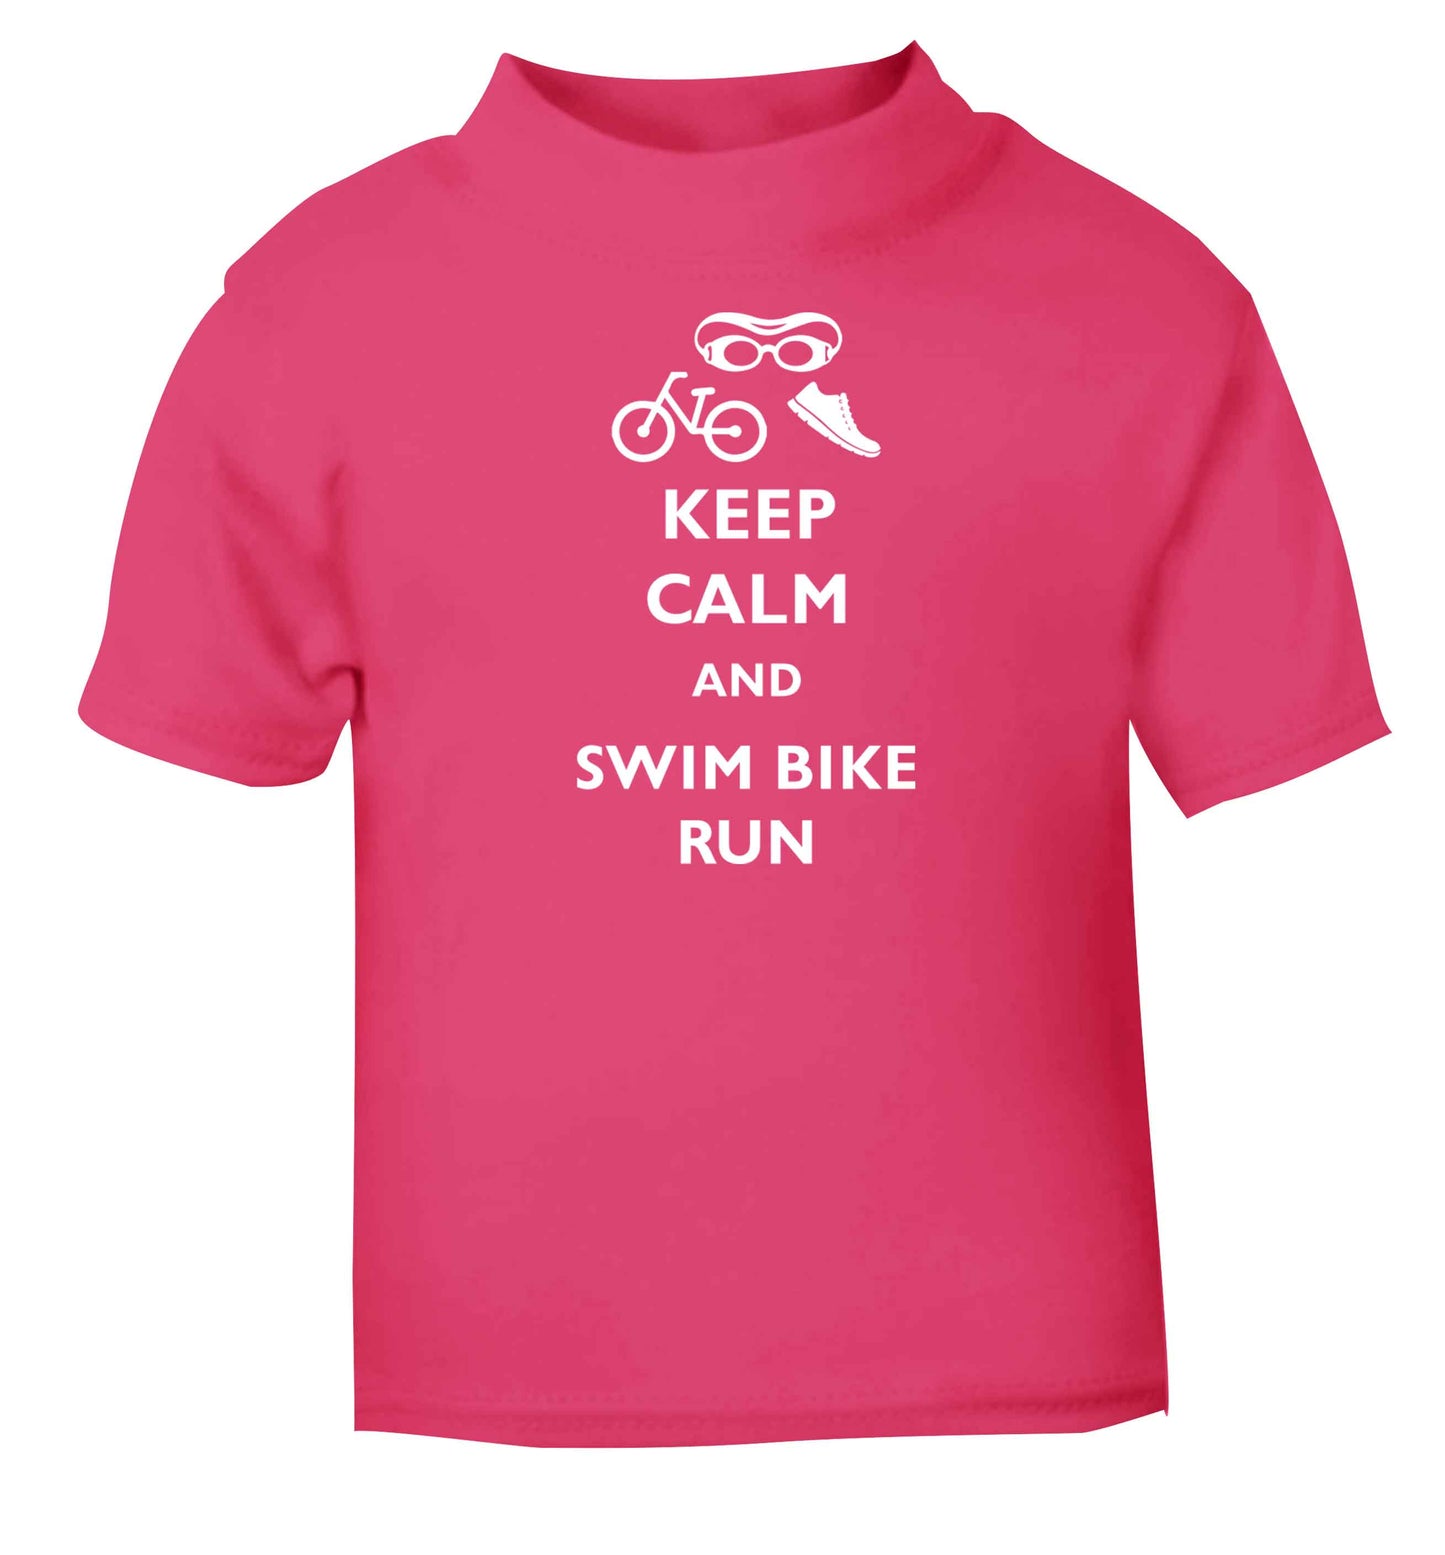 Keep calm and swim bike run pink baby toddler Tshirt 2 Years